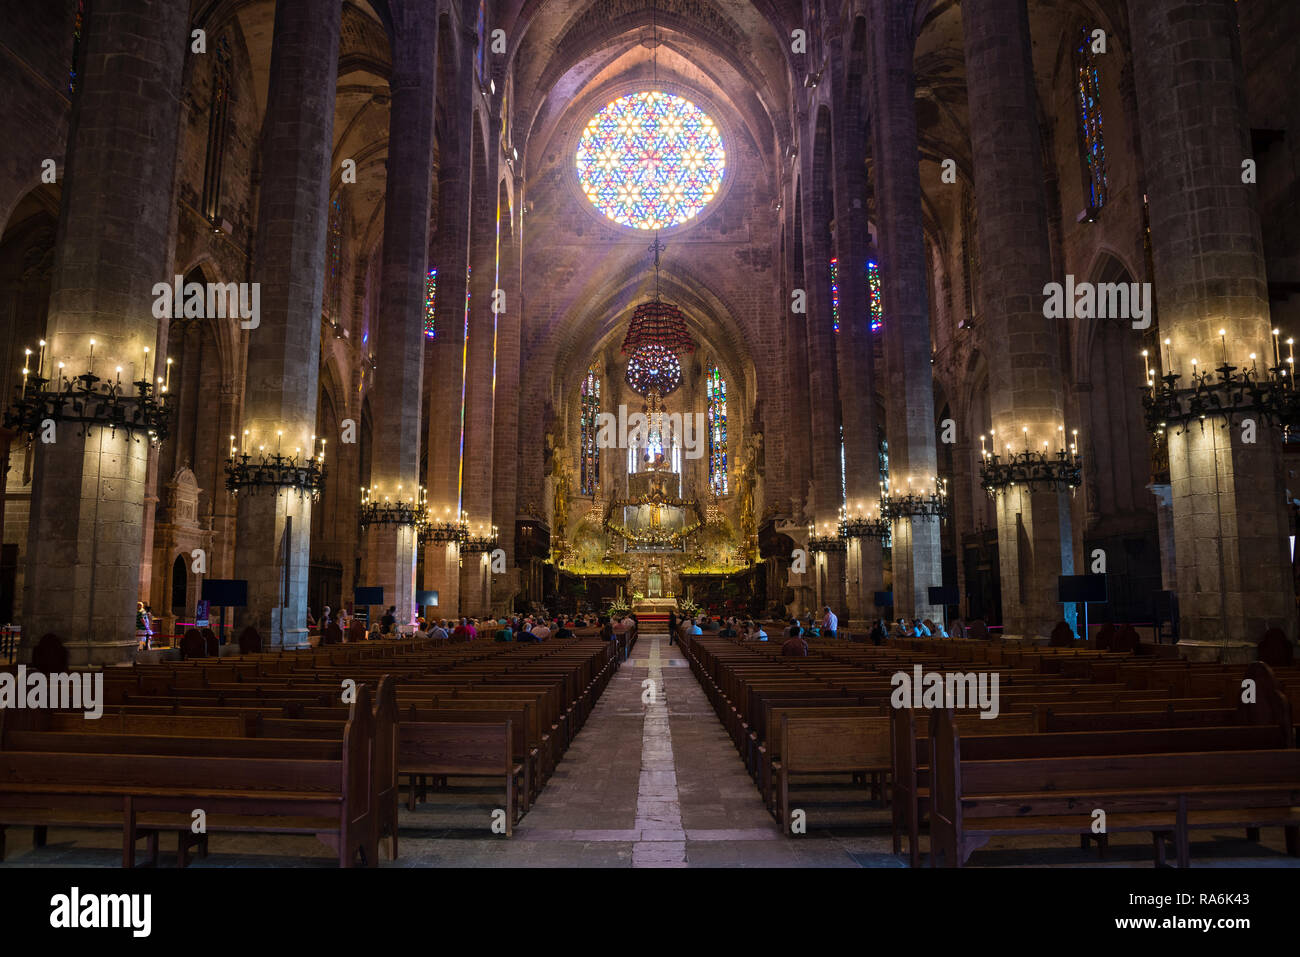 PALMA DE MALLORCA, Spagna - 30 SETT 2018: stile gotico di interno nella Cattedrale di Santa Maria di Palma (La Seu) in Palma de Mallorca, Spagna Foto Stock